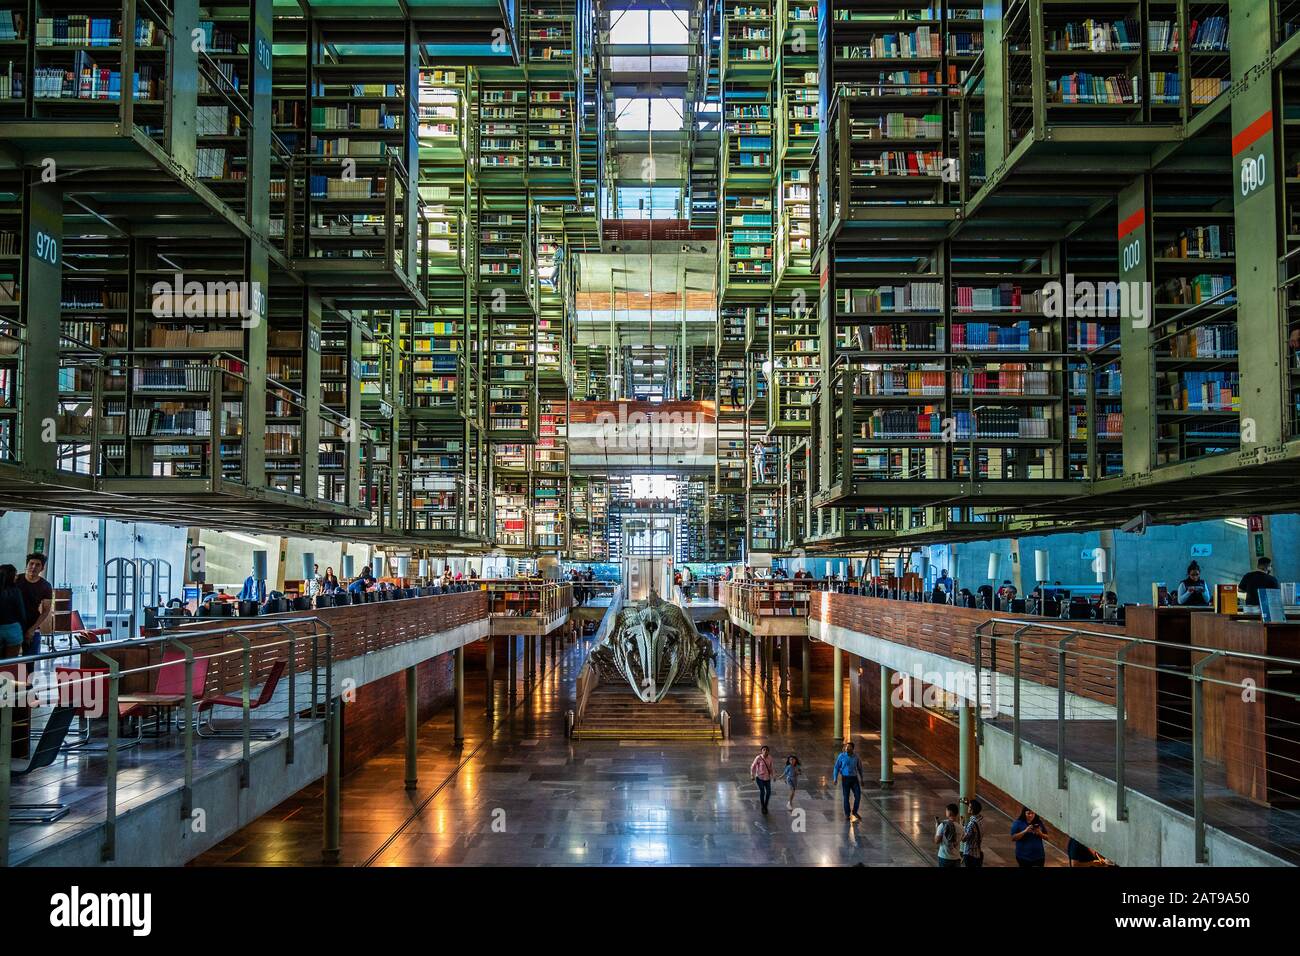 Vue sur l'intérieur du monument architectural Vasconcelos Library (Biblioteca Vasconcelos) à Mexico, au Mexique. Banque D'Images